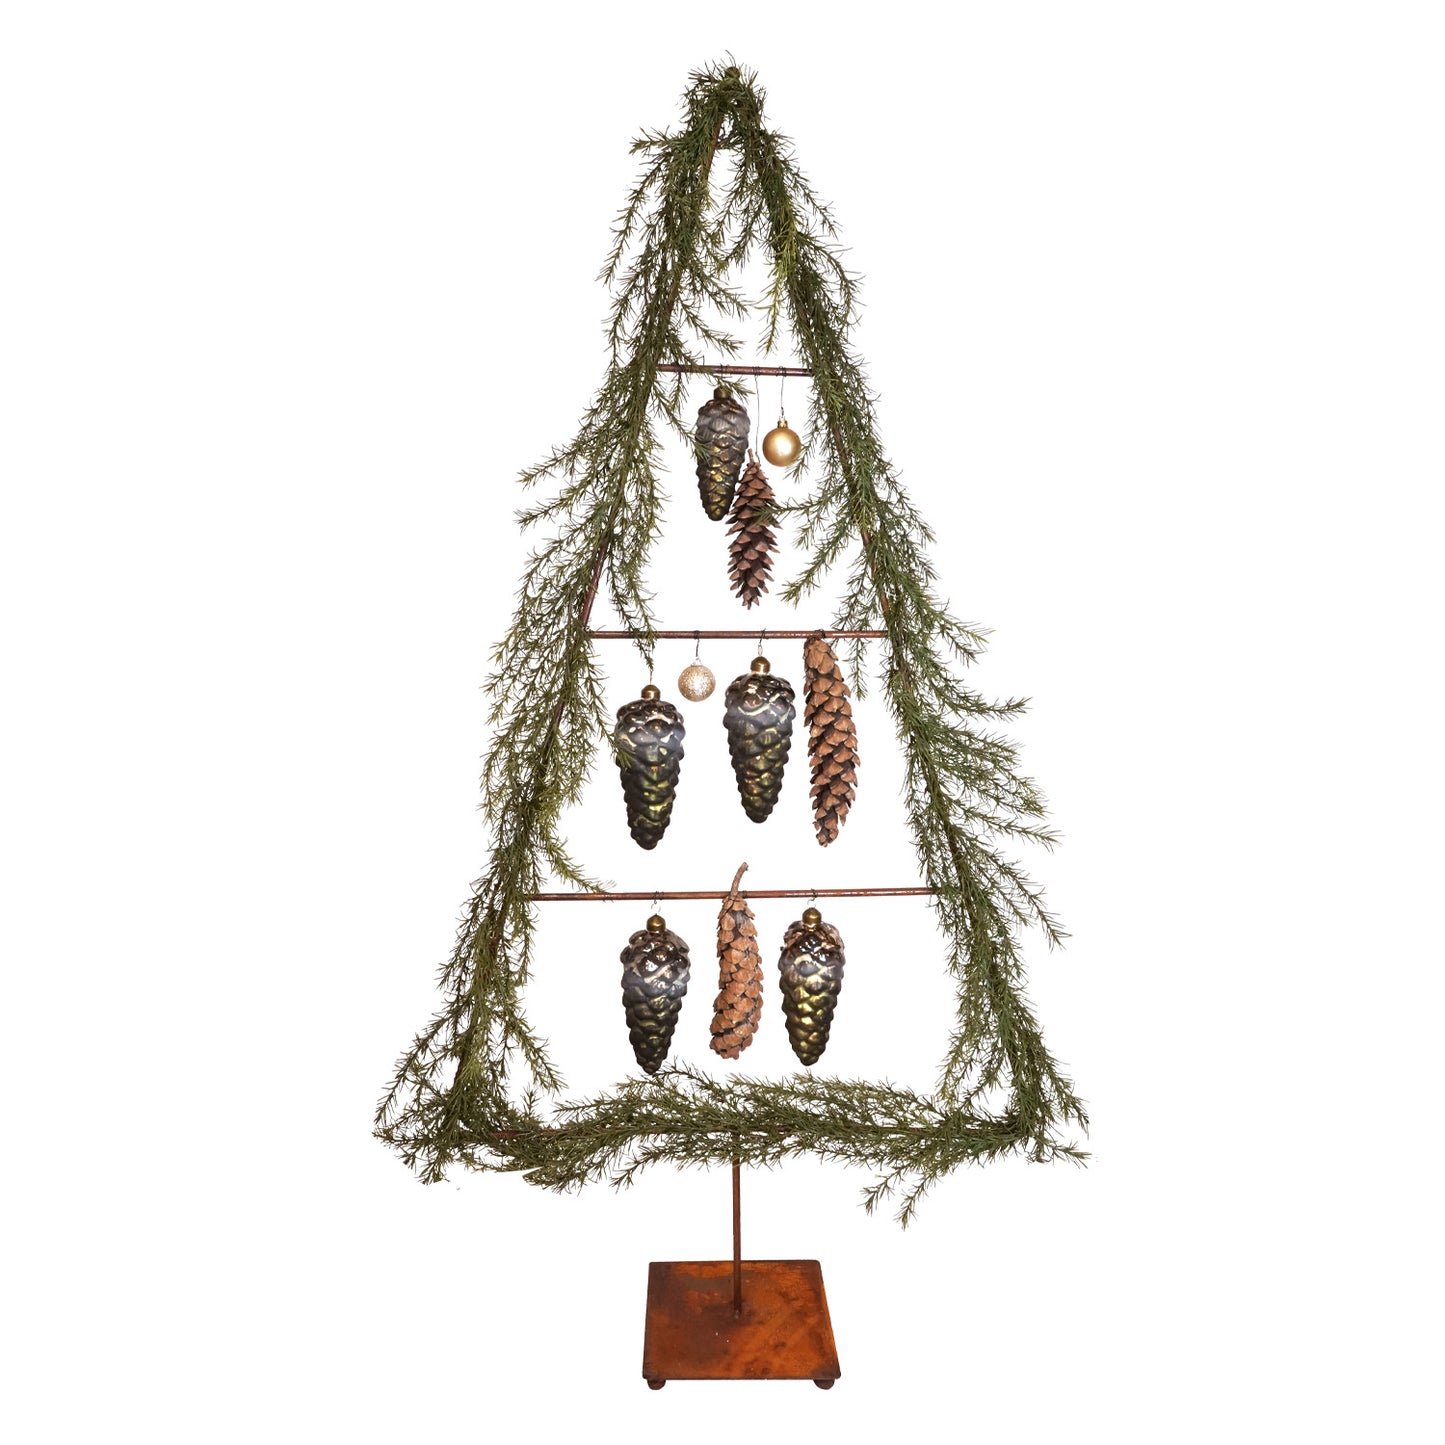 Schlichter Tannenbaum / Weihnachts- und Dekobaum aus Edelrost 'Crossbar' | B 64 x H 130 cm | 3 Querstangen zum Behängen | In- und Outdoor geeignet | Made in Germany